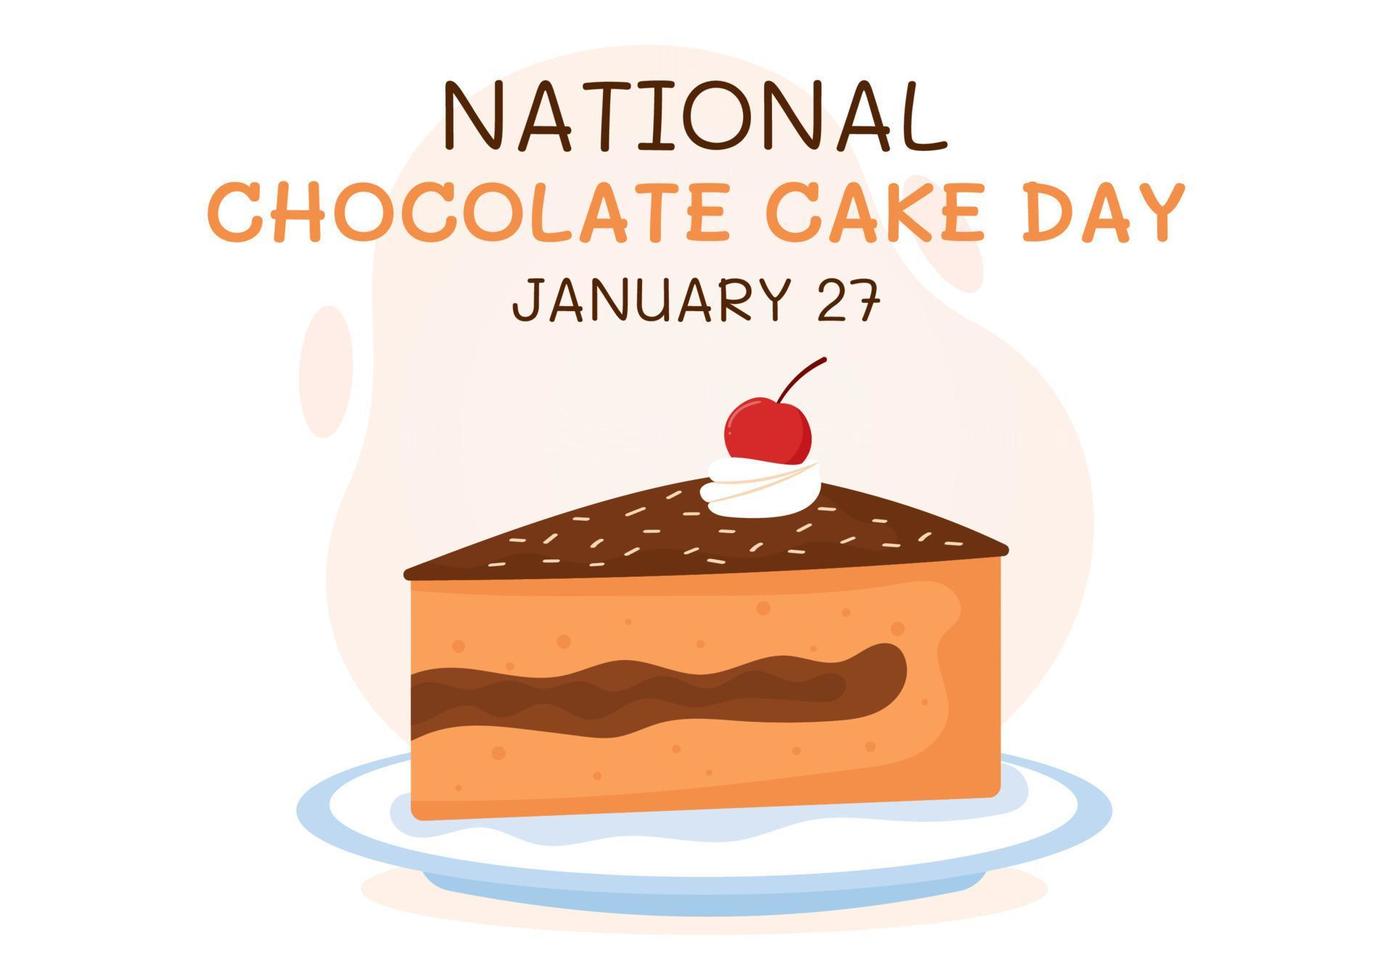 célébration de la journée nationale du gâteau au chocolat le 27 janvier avec une délicieuse douceur dans un fond de dessin animé plat illustration de modèles dessinés à la main vecteur